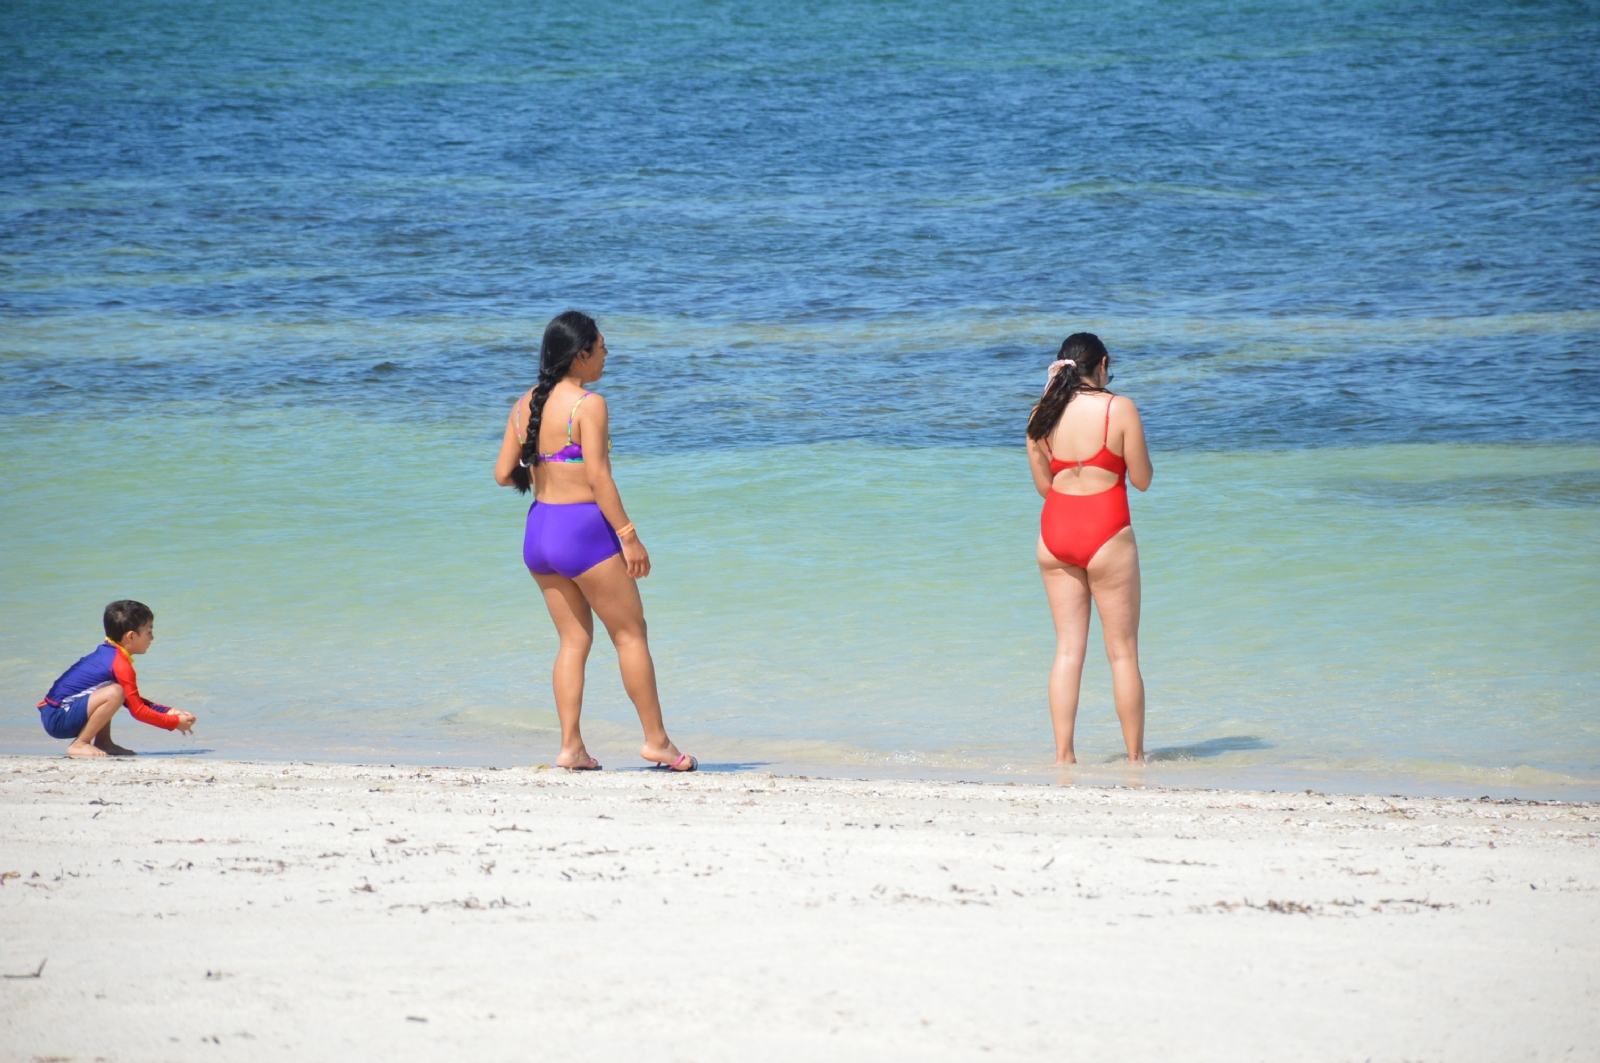 Las playas de Campeche pueden disfrutarse sanamente en el Verano